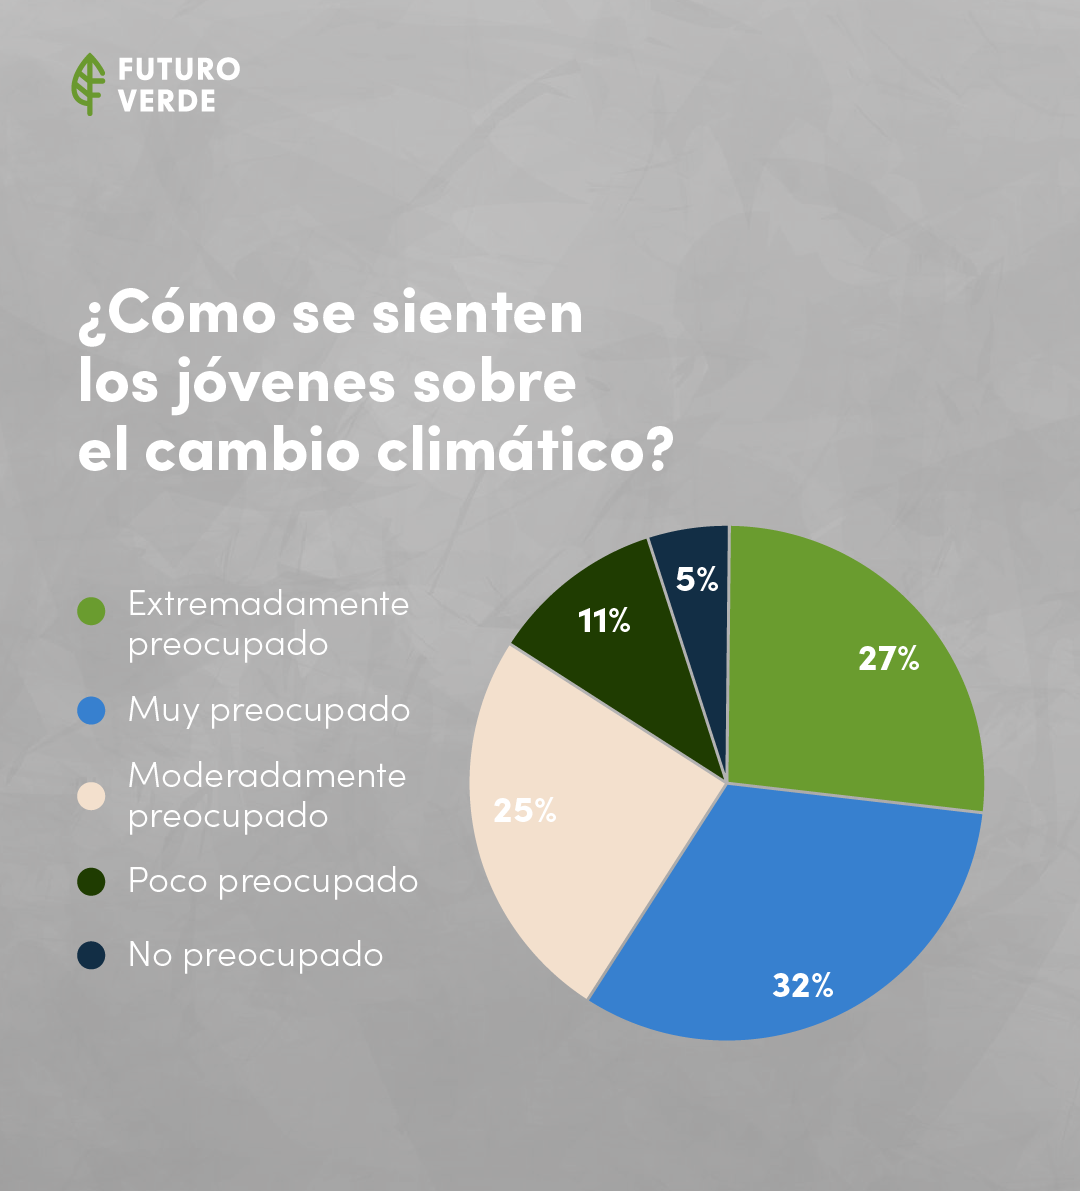 Sentimientos de los jóvenes respecto al cambio climático. - Fuente The Lancet Planetary Health